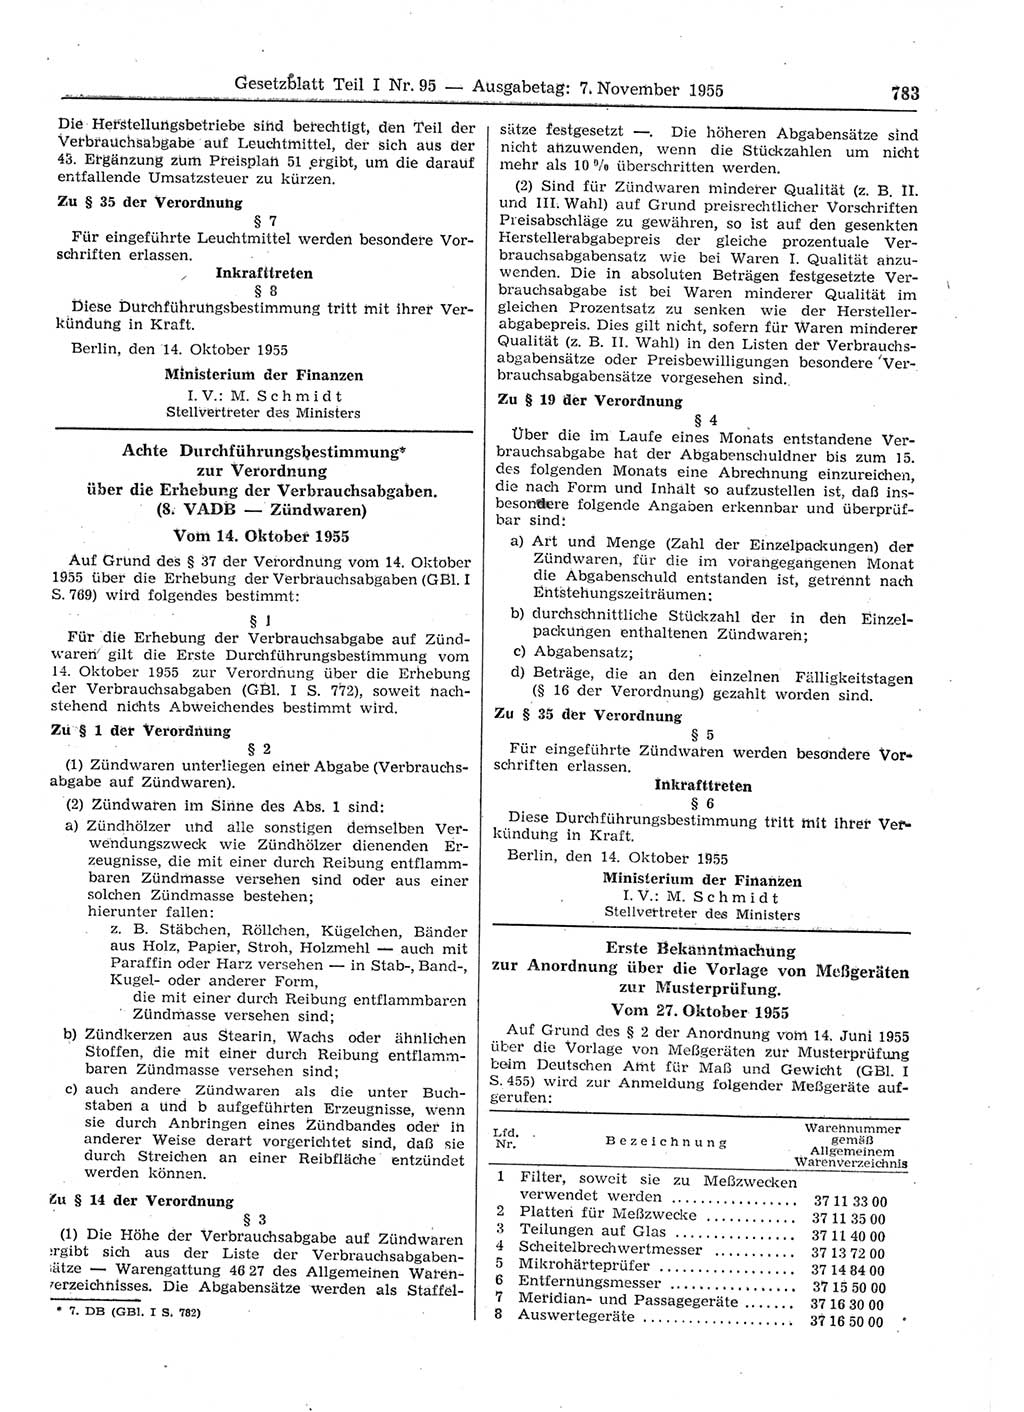 Gesetzblatt (GBl.) der Deutschen Demokratischen Republik (DDR) Teil Ⅰ 1955, Seite 783 (GBl. DDR Ⅰ 1955, S. 783)